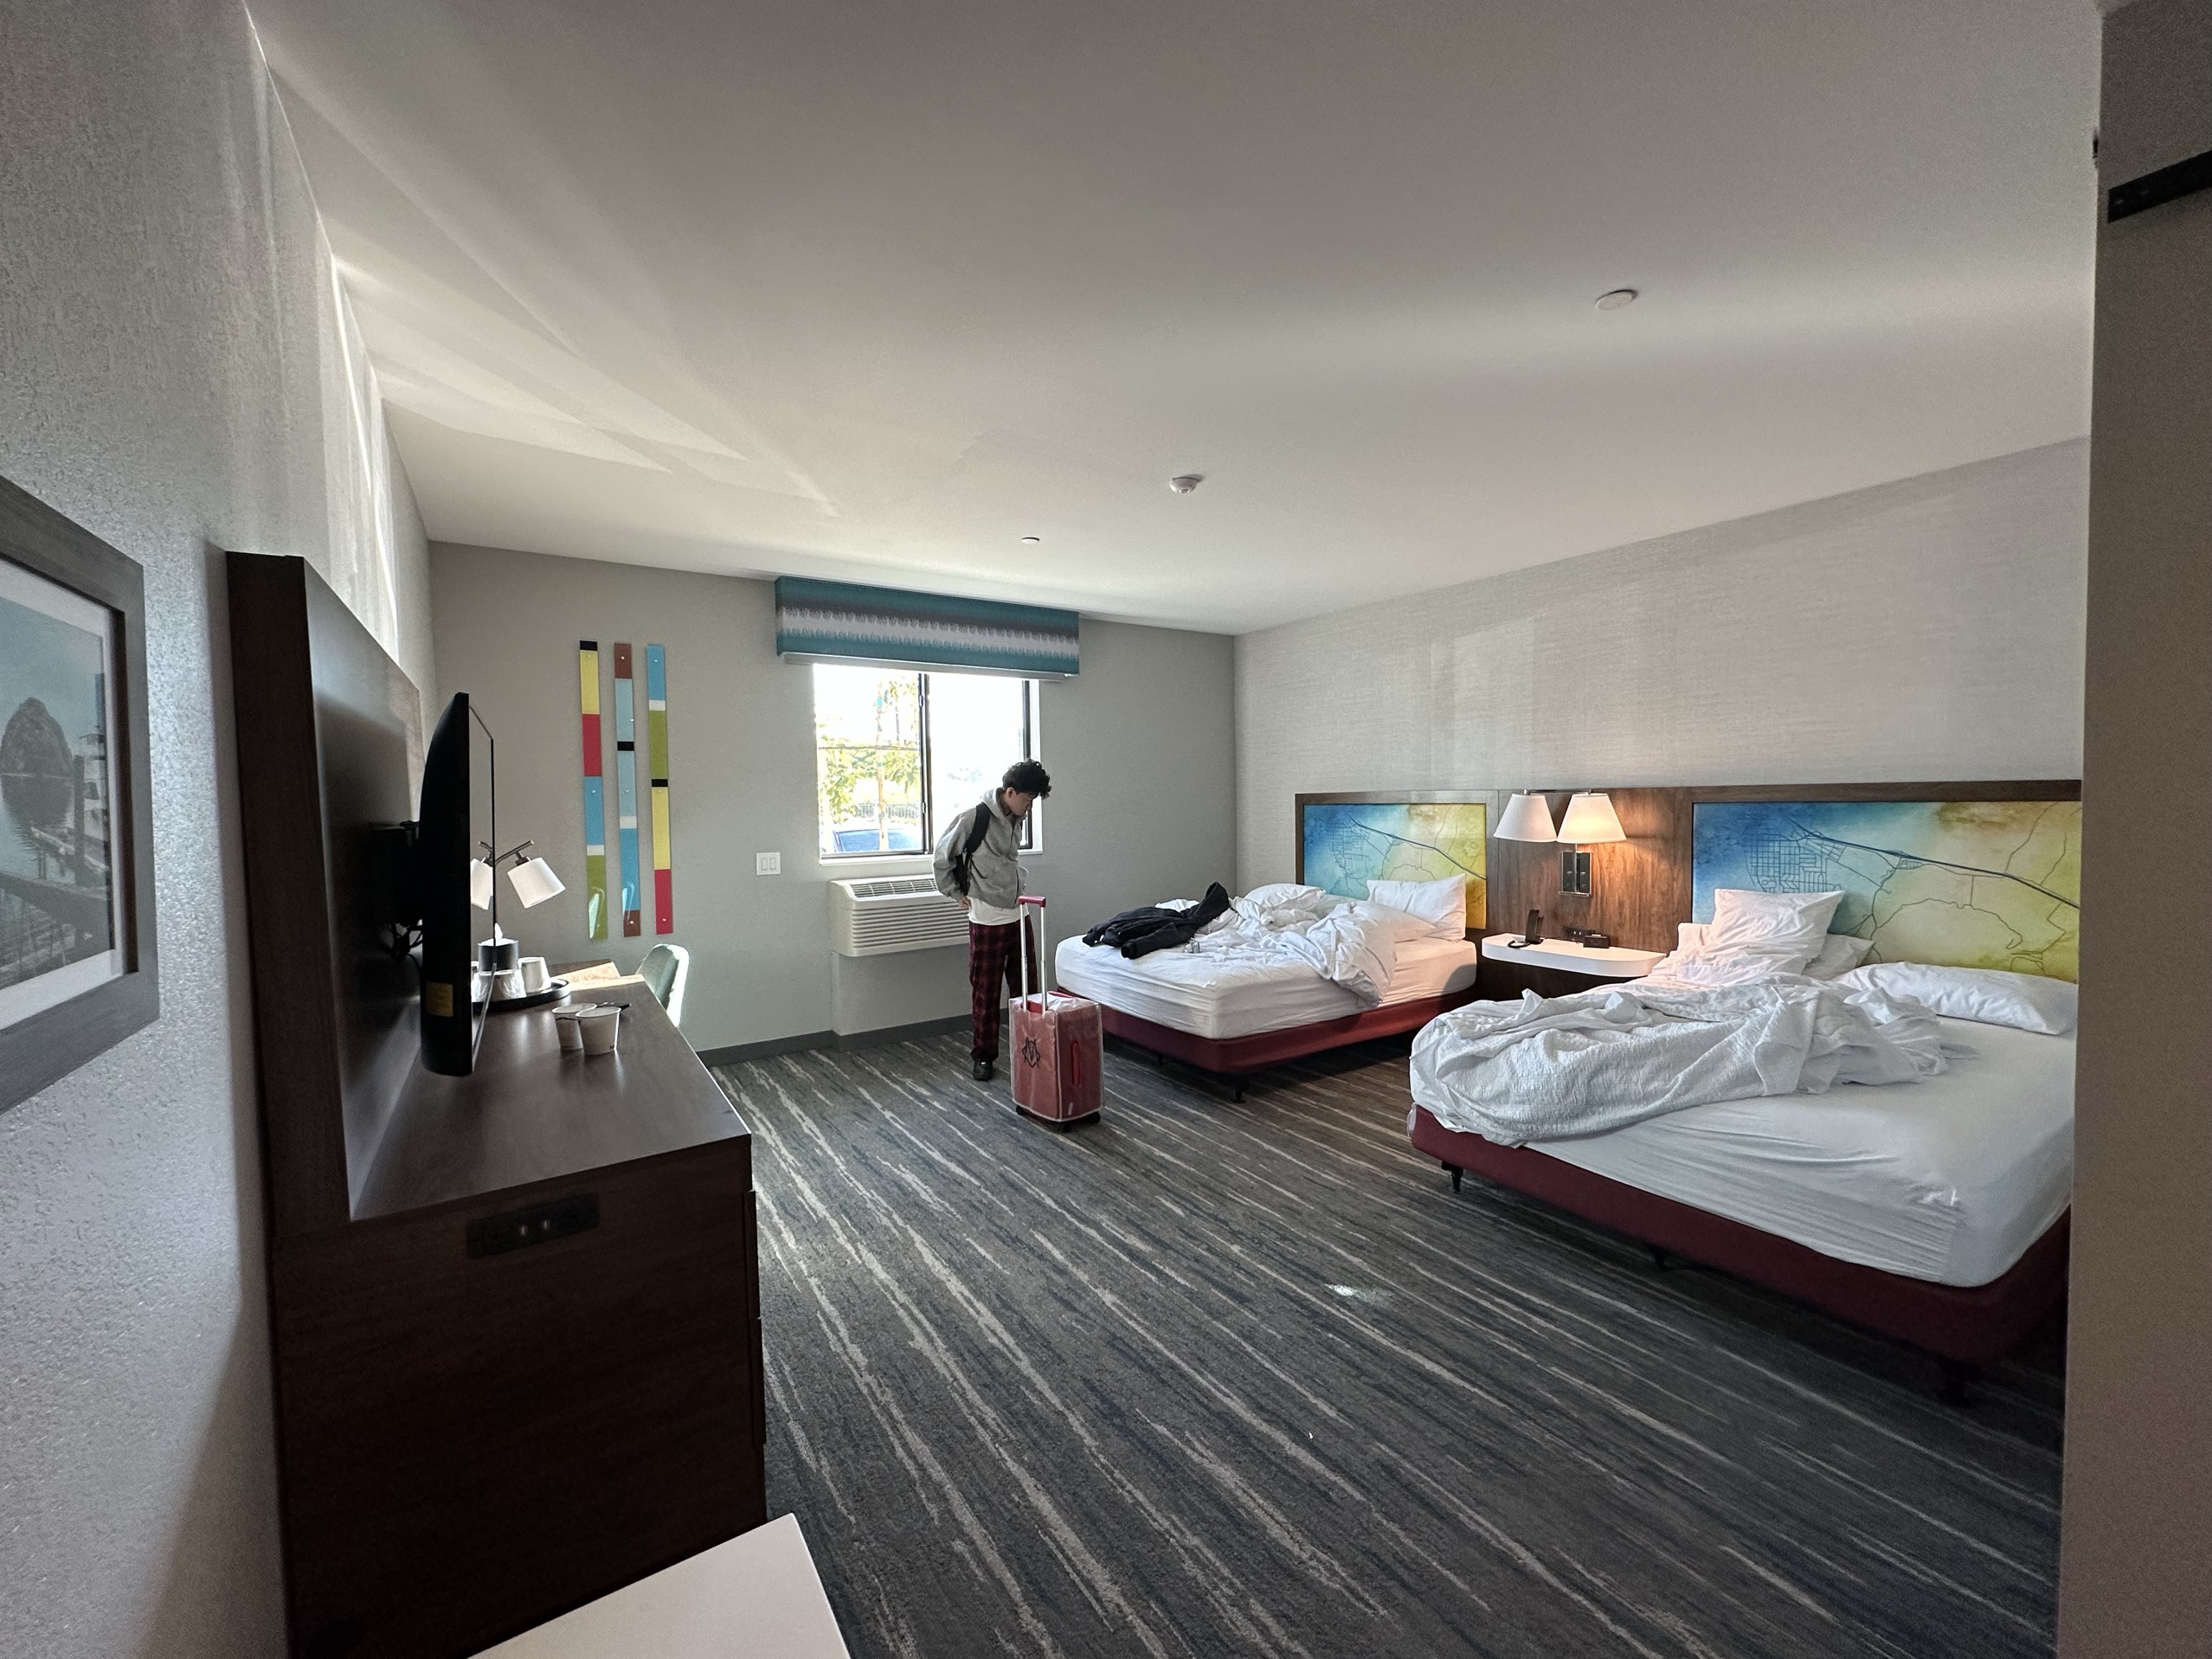 一间很新的酒店，房间很大床也很舒服。我们住的是一个无障碍房间，衣帽挂钩，洗漱用品放置的位置都是很低，